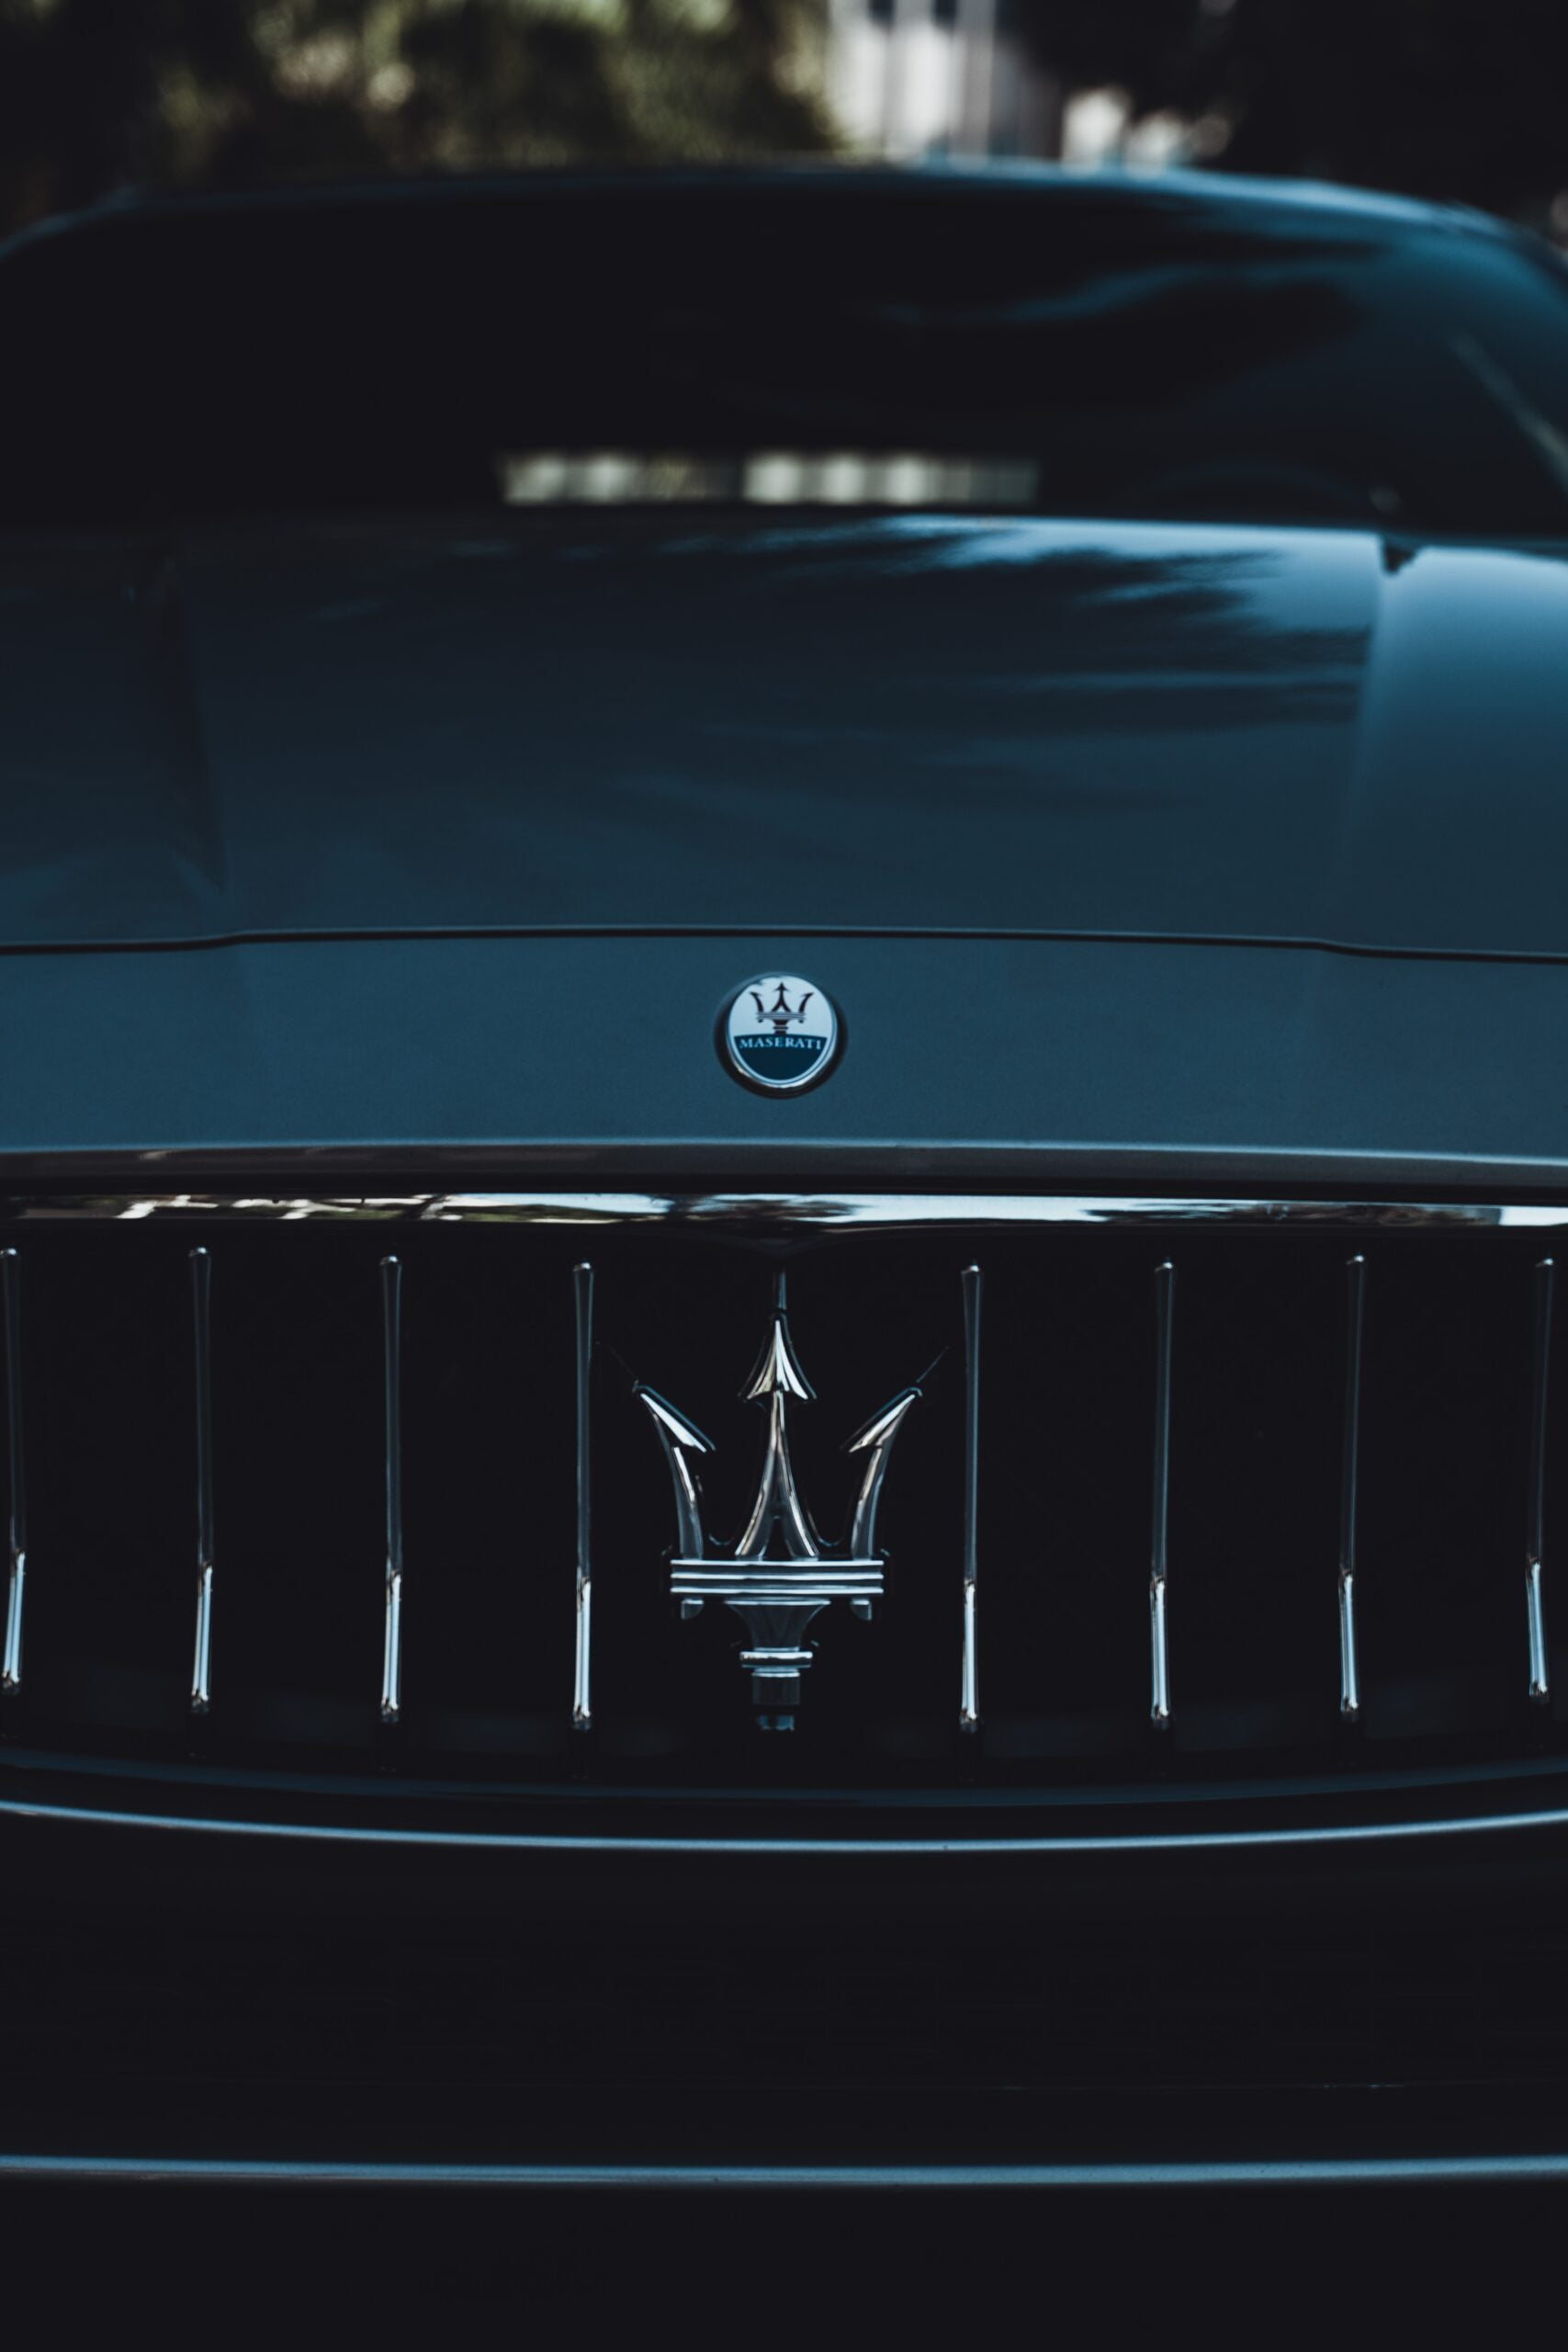 Maserati key replacement 24/7